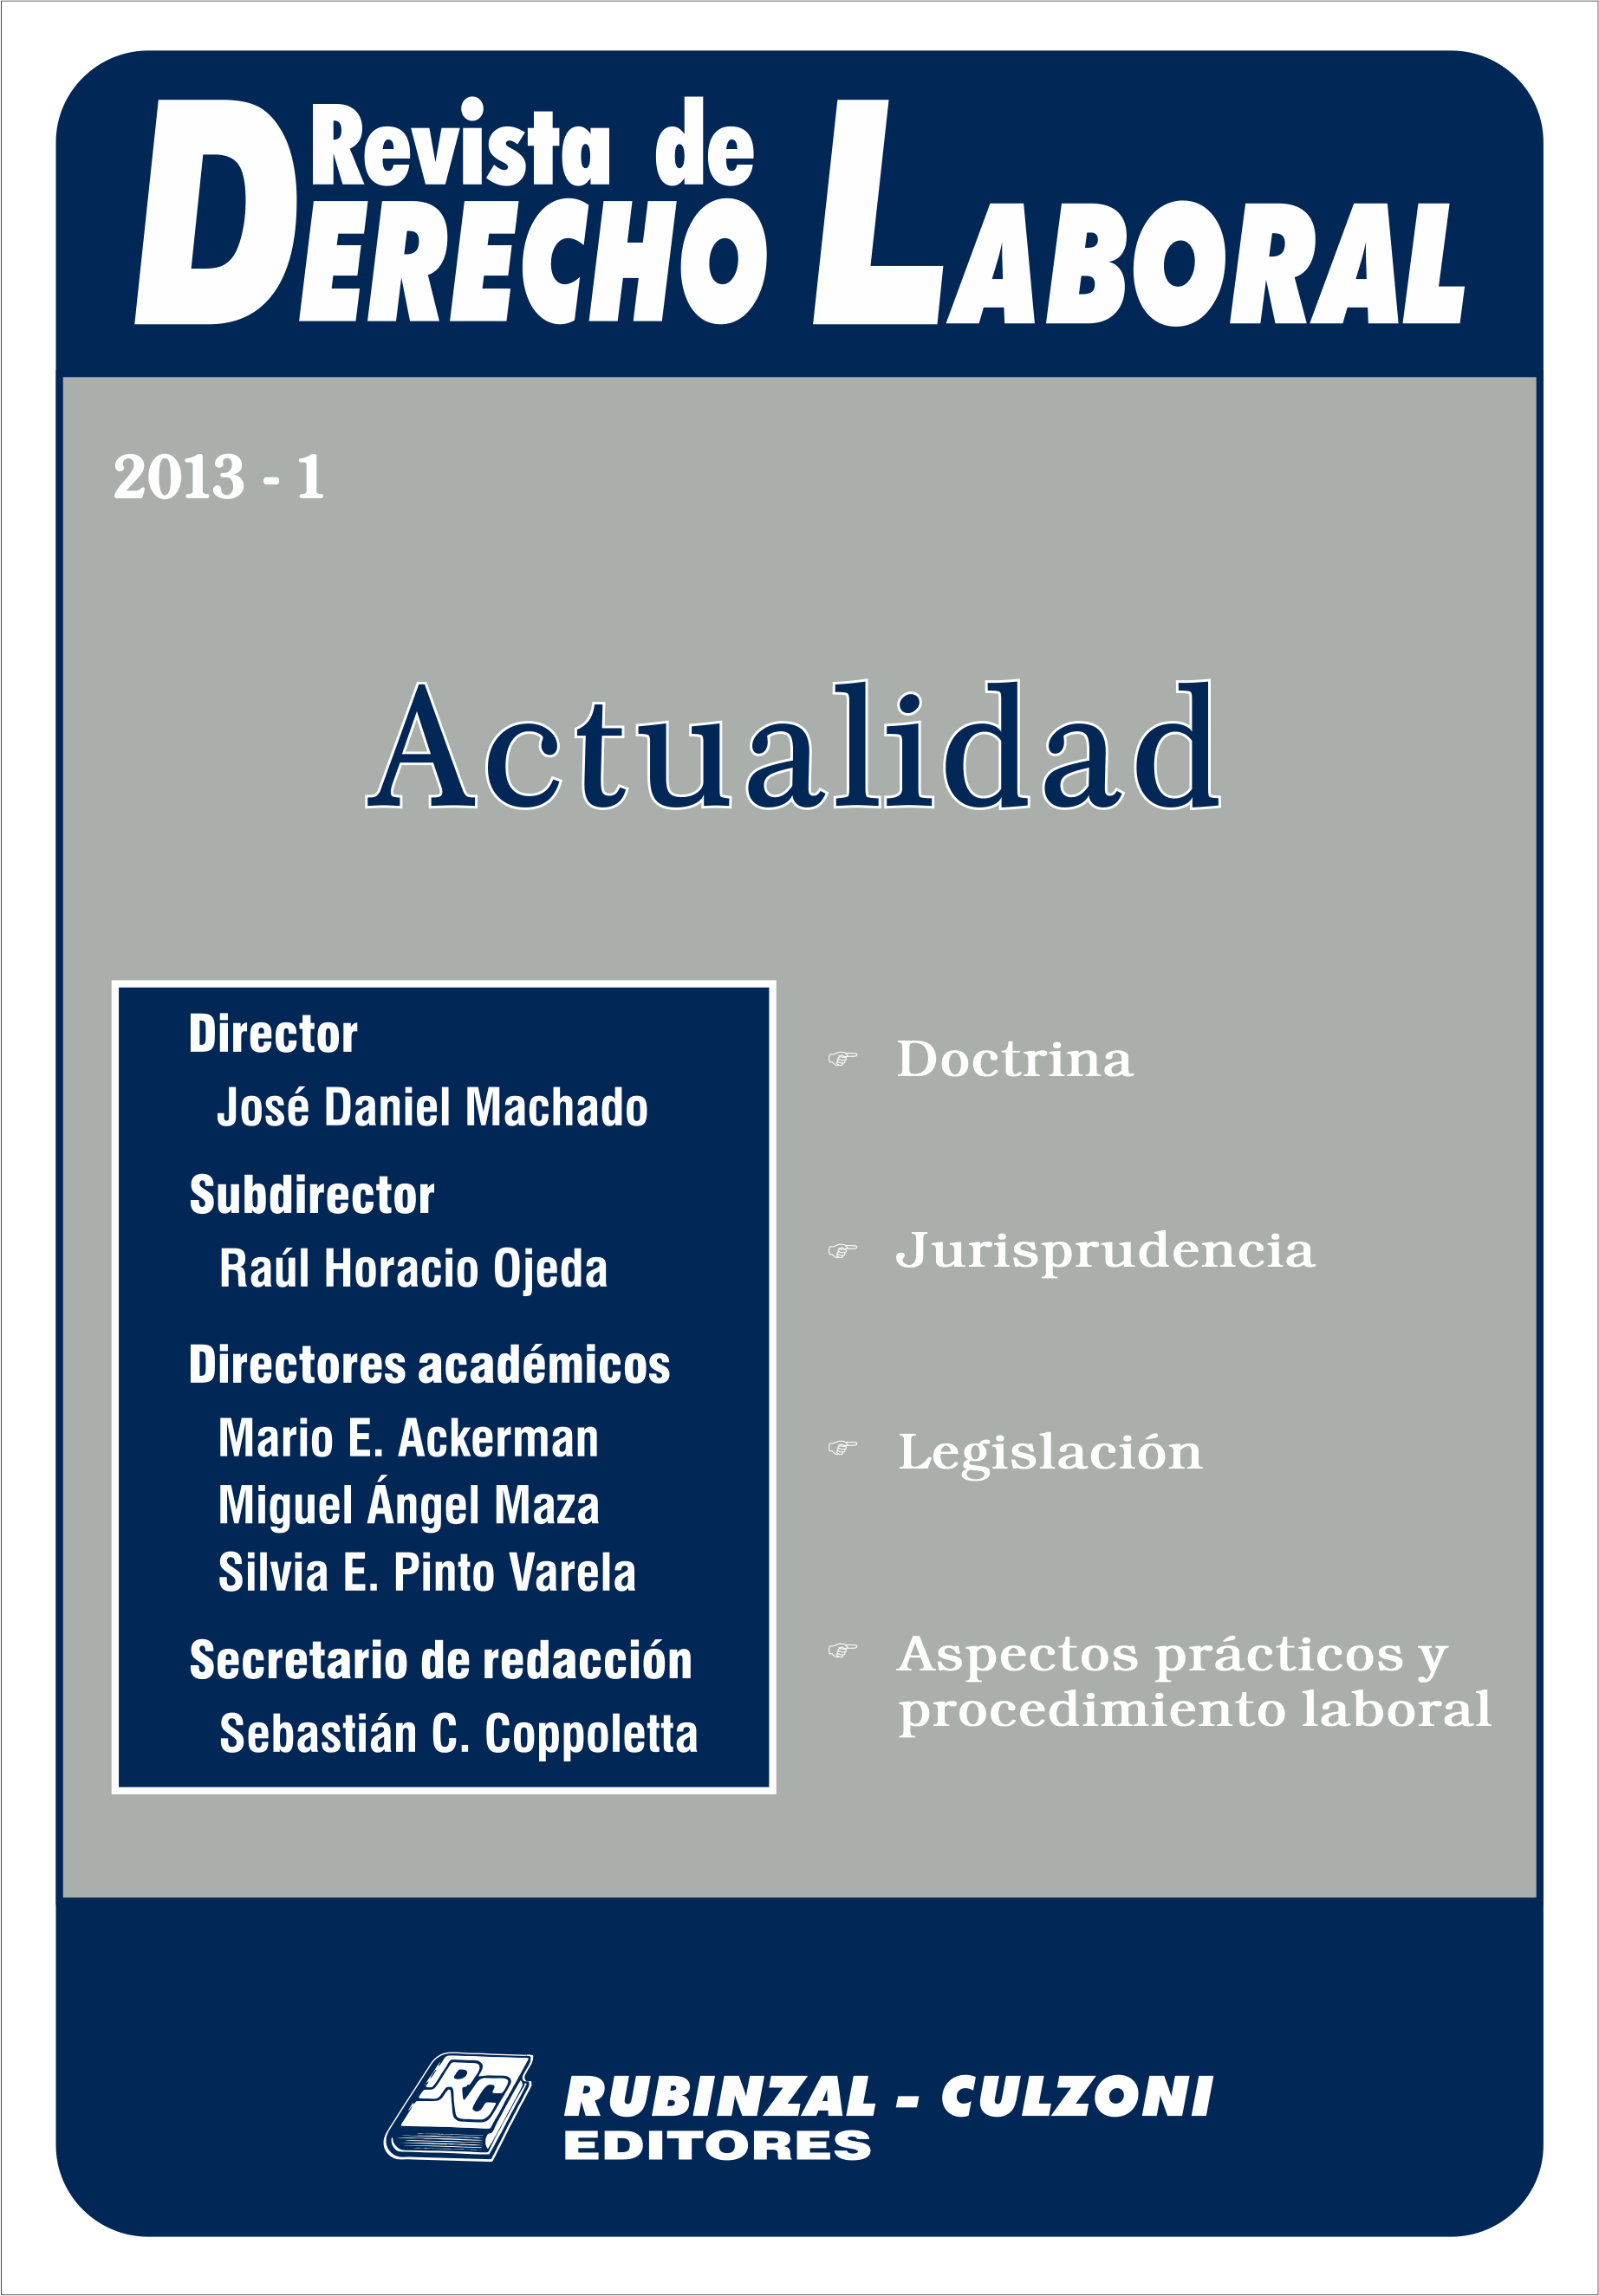 Revista de Derecho Laboral Actualidad - Año 2013 - 1.